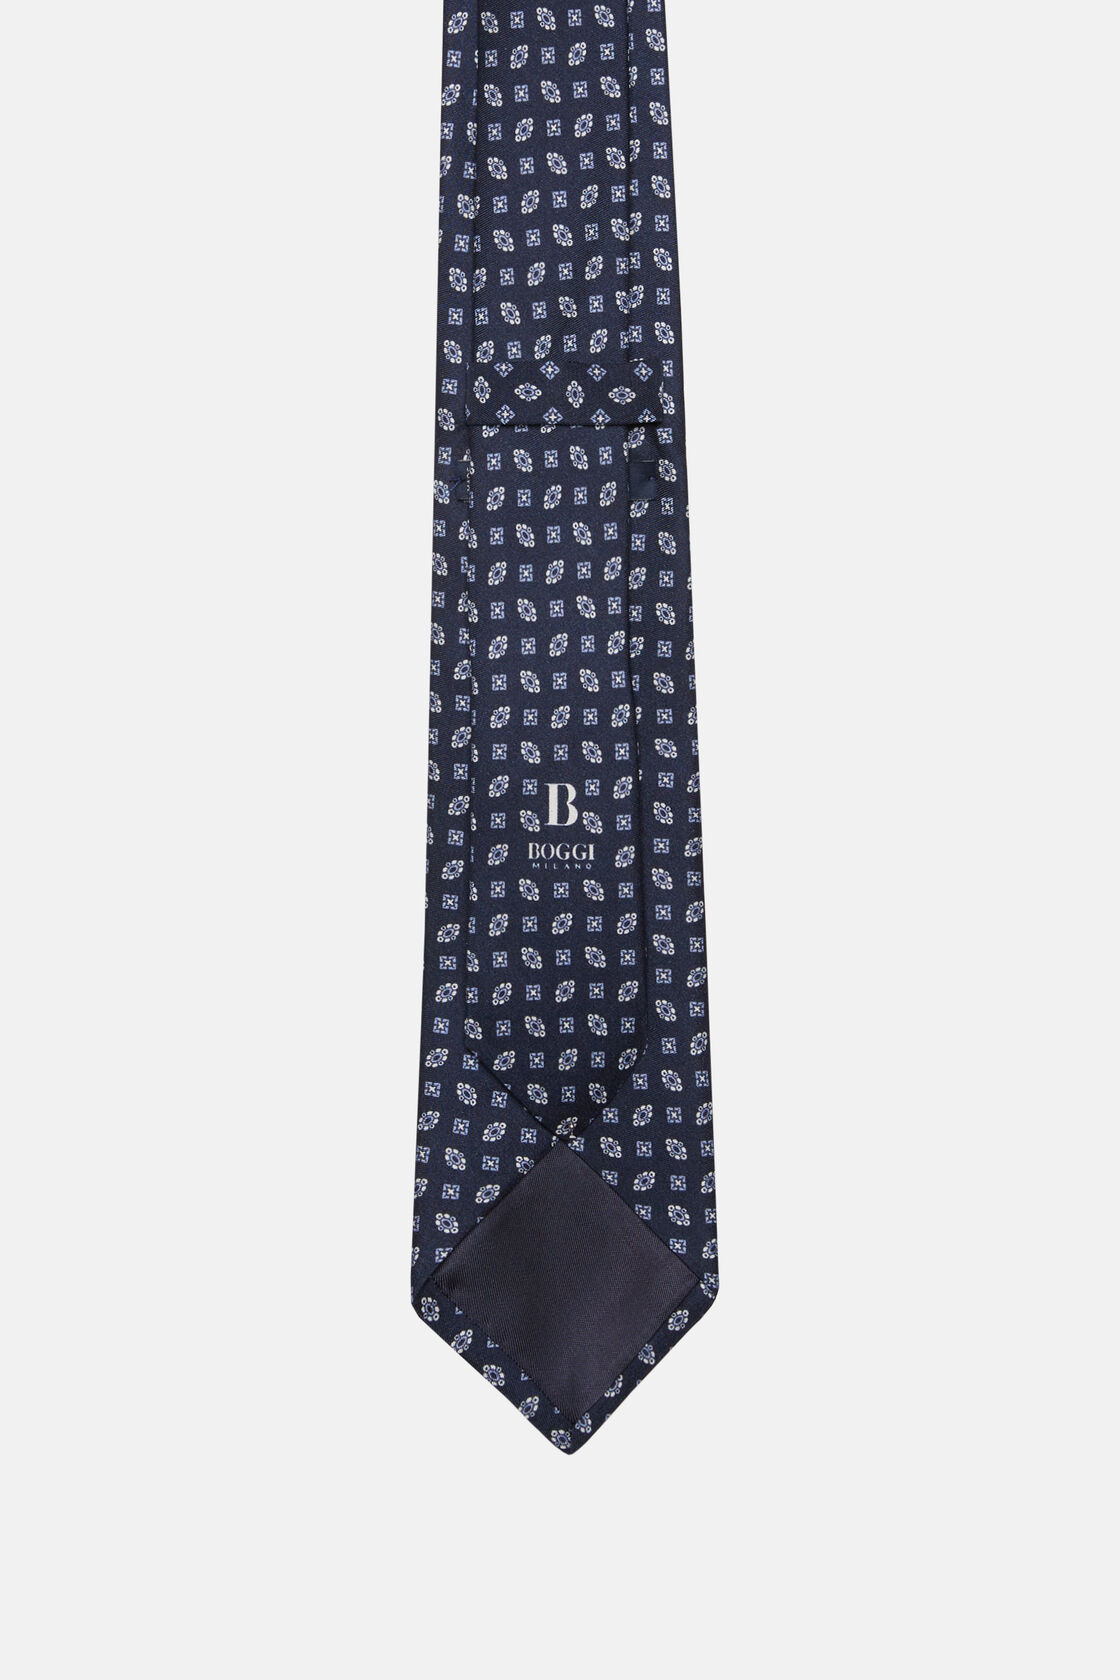 Cravate Motif Géométrique En Soie, bleu marine, hi-res